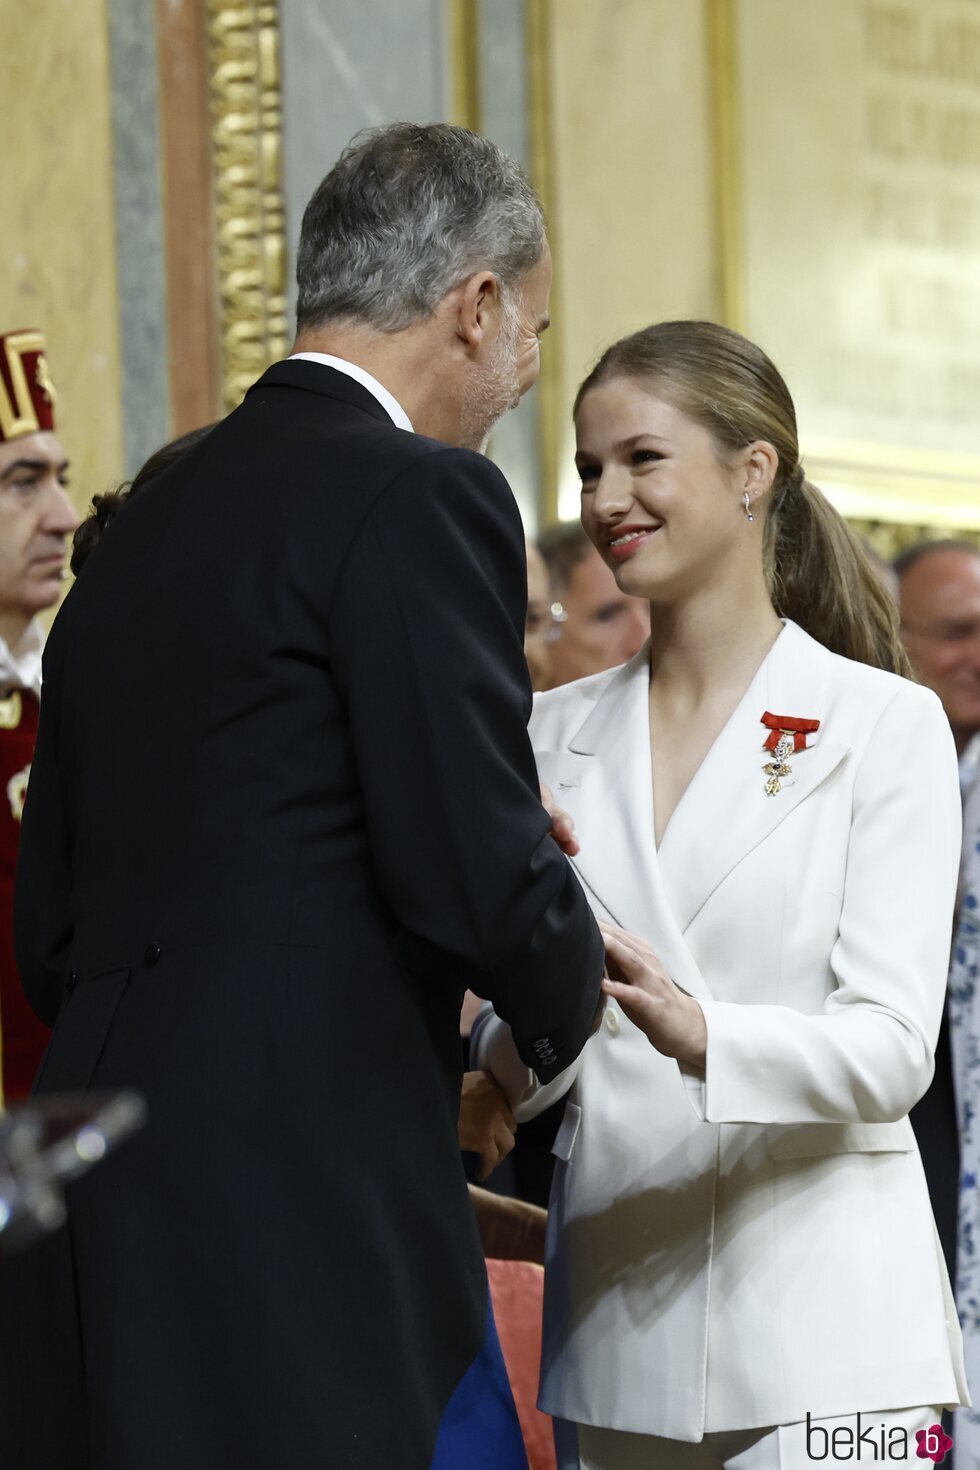 El Rey Felipe y la Princesa Leonor se besan con cariño en la Jura de la Constitución